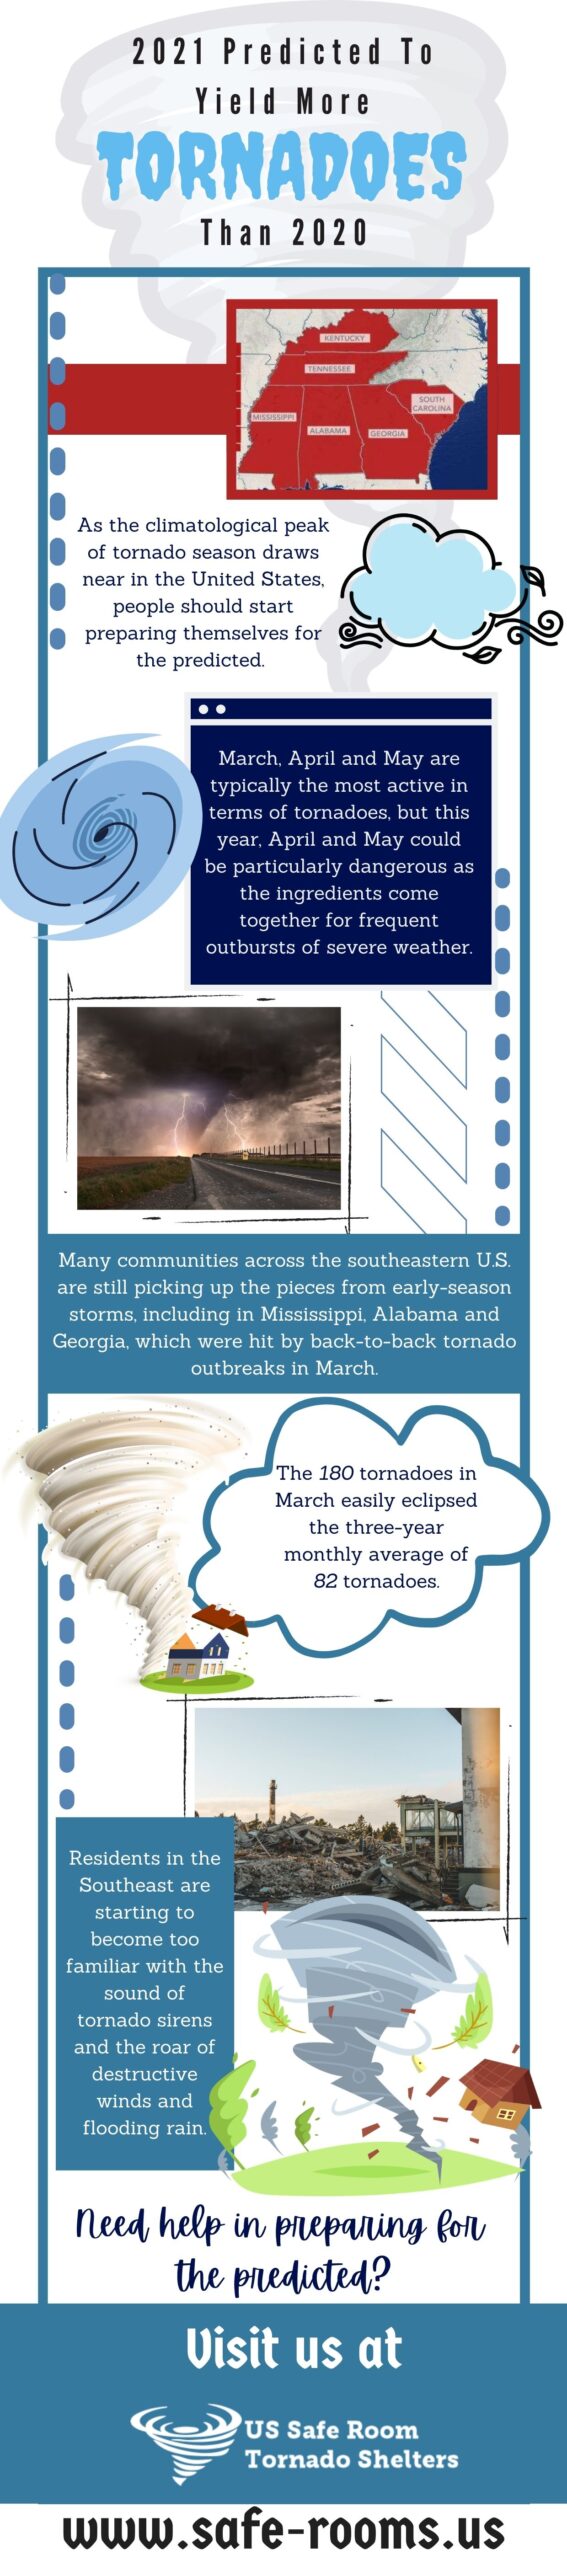 tornado prediction 2021